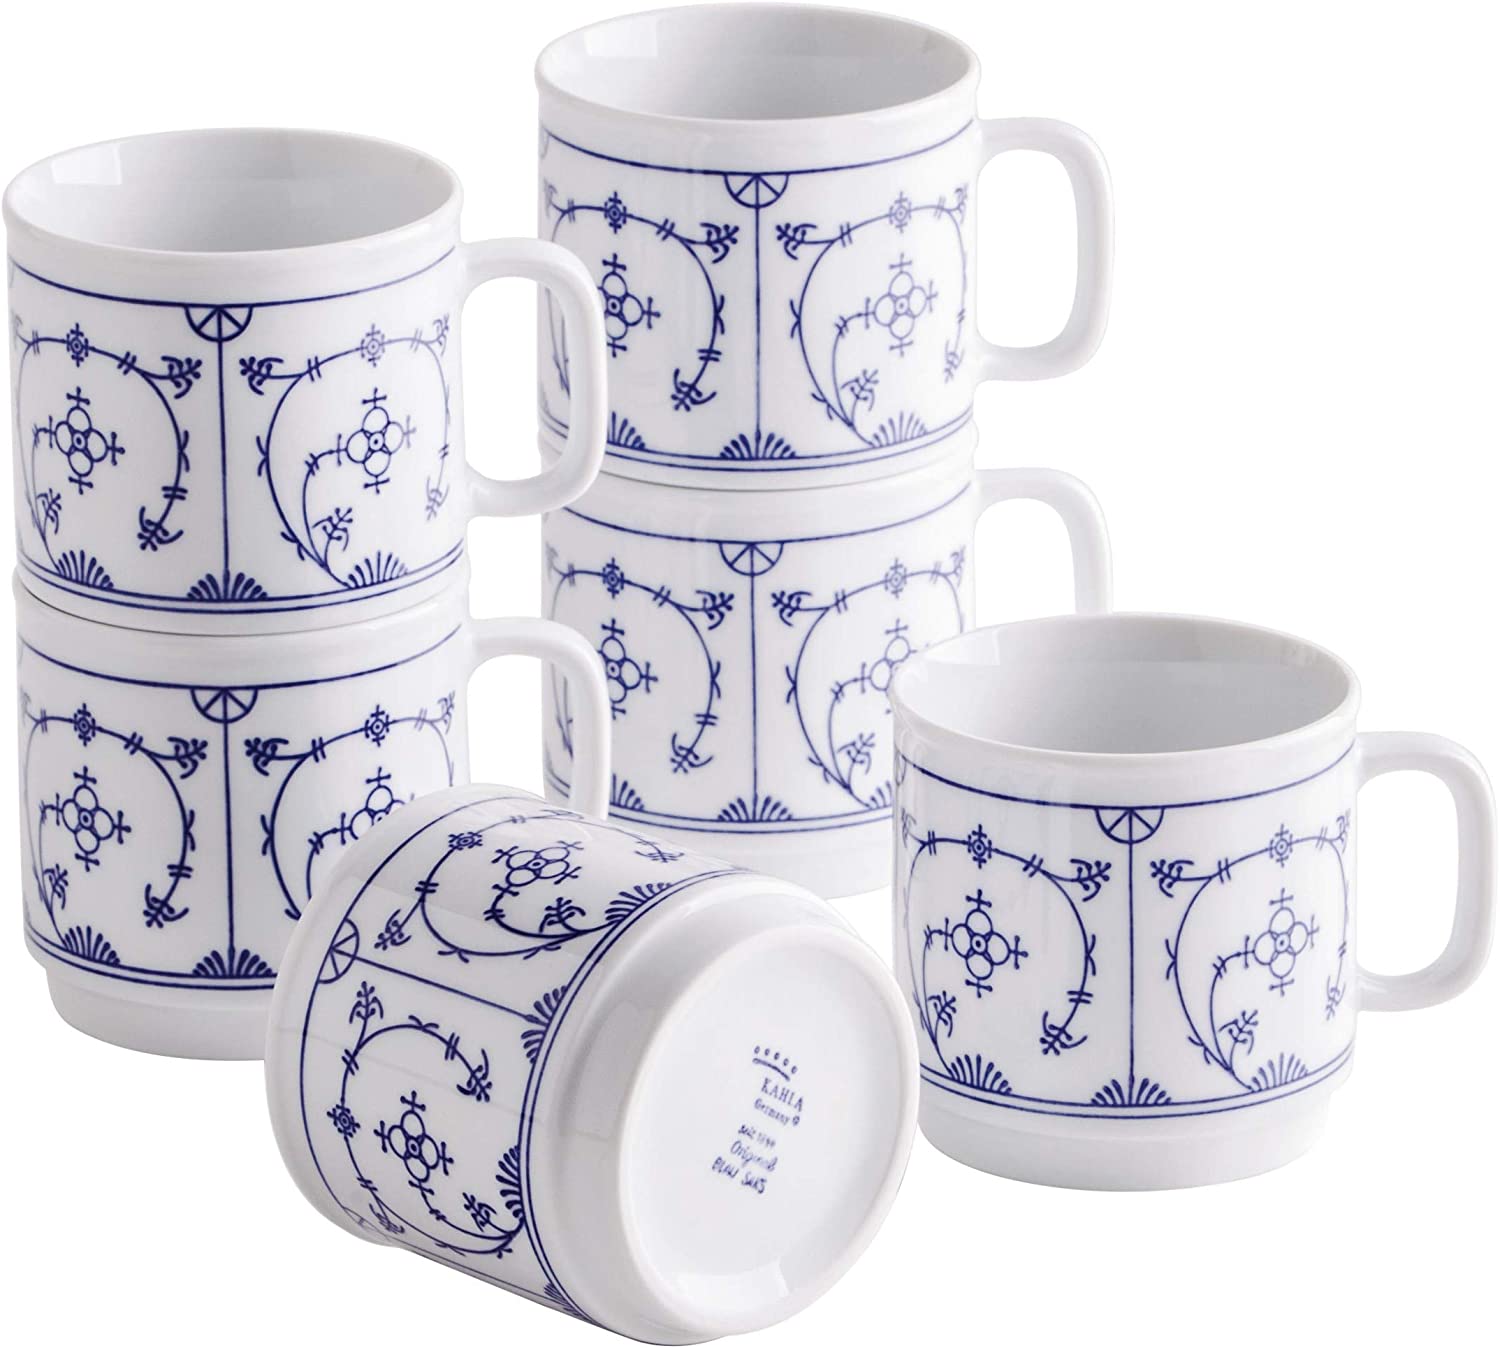 Kahla 480265A75019H Blue Saks Blue and White Mug Set for 6 People Coffee Mug Set 6-Piece 300 ml Porcelain Mug Set Tea Cocoa Cups